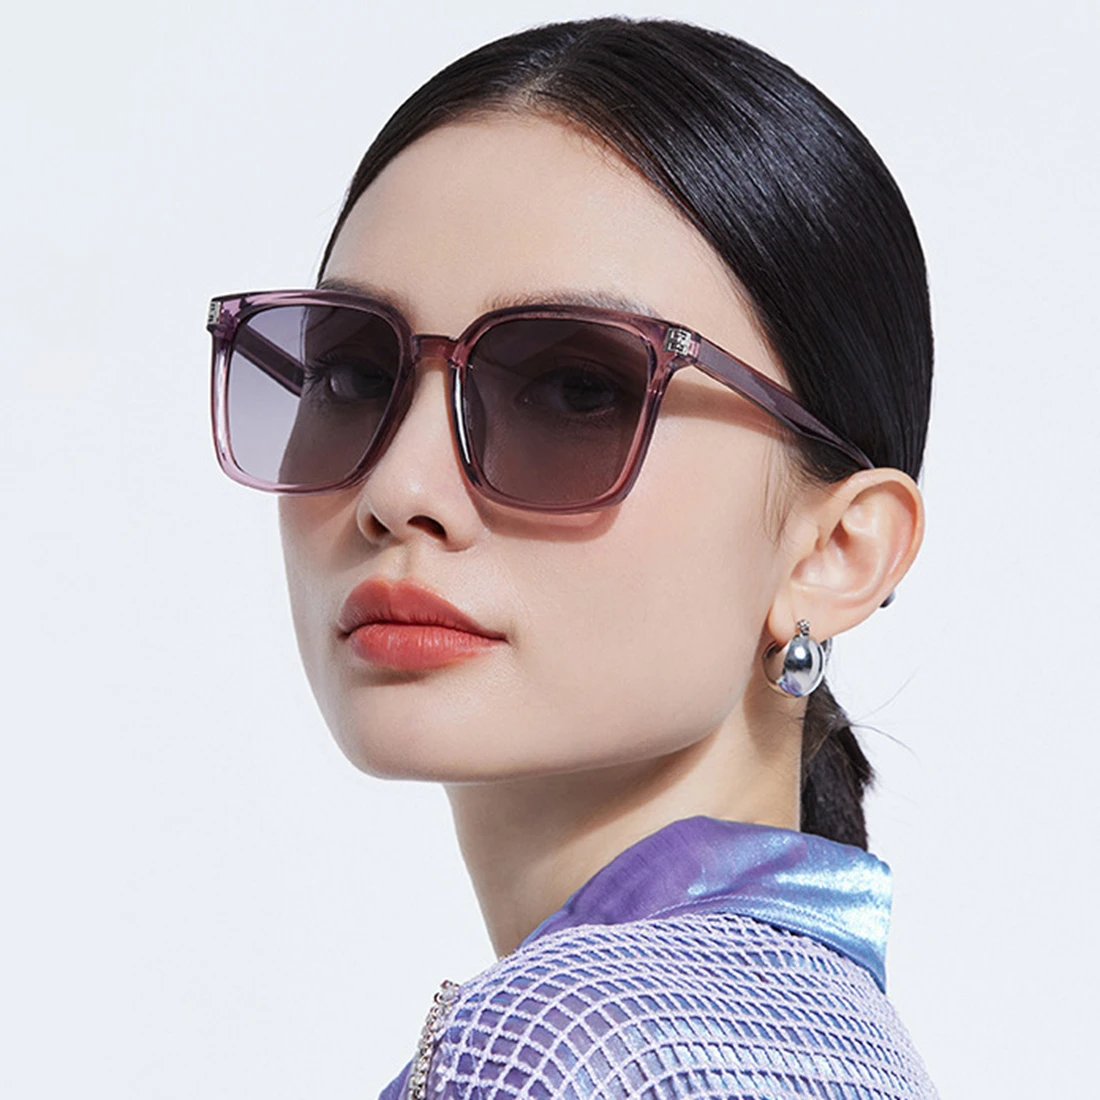 

New Fashion Large Frame Sunglasses For Women Elegant TAC Travel Driving Polarized Sun Glasses Female Brand Ultralight UV400